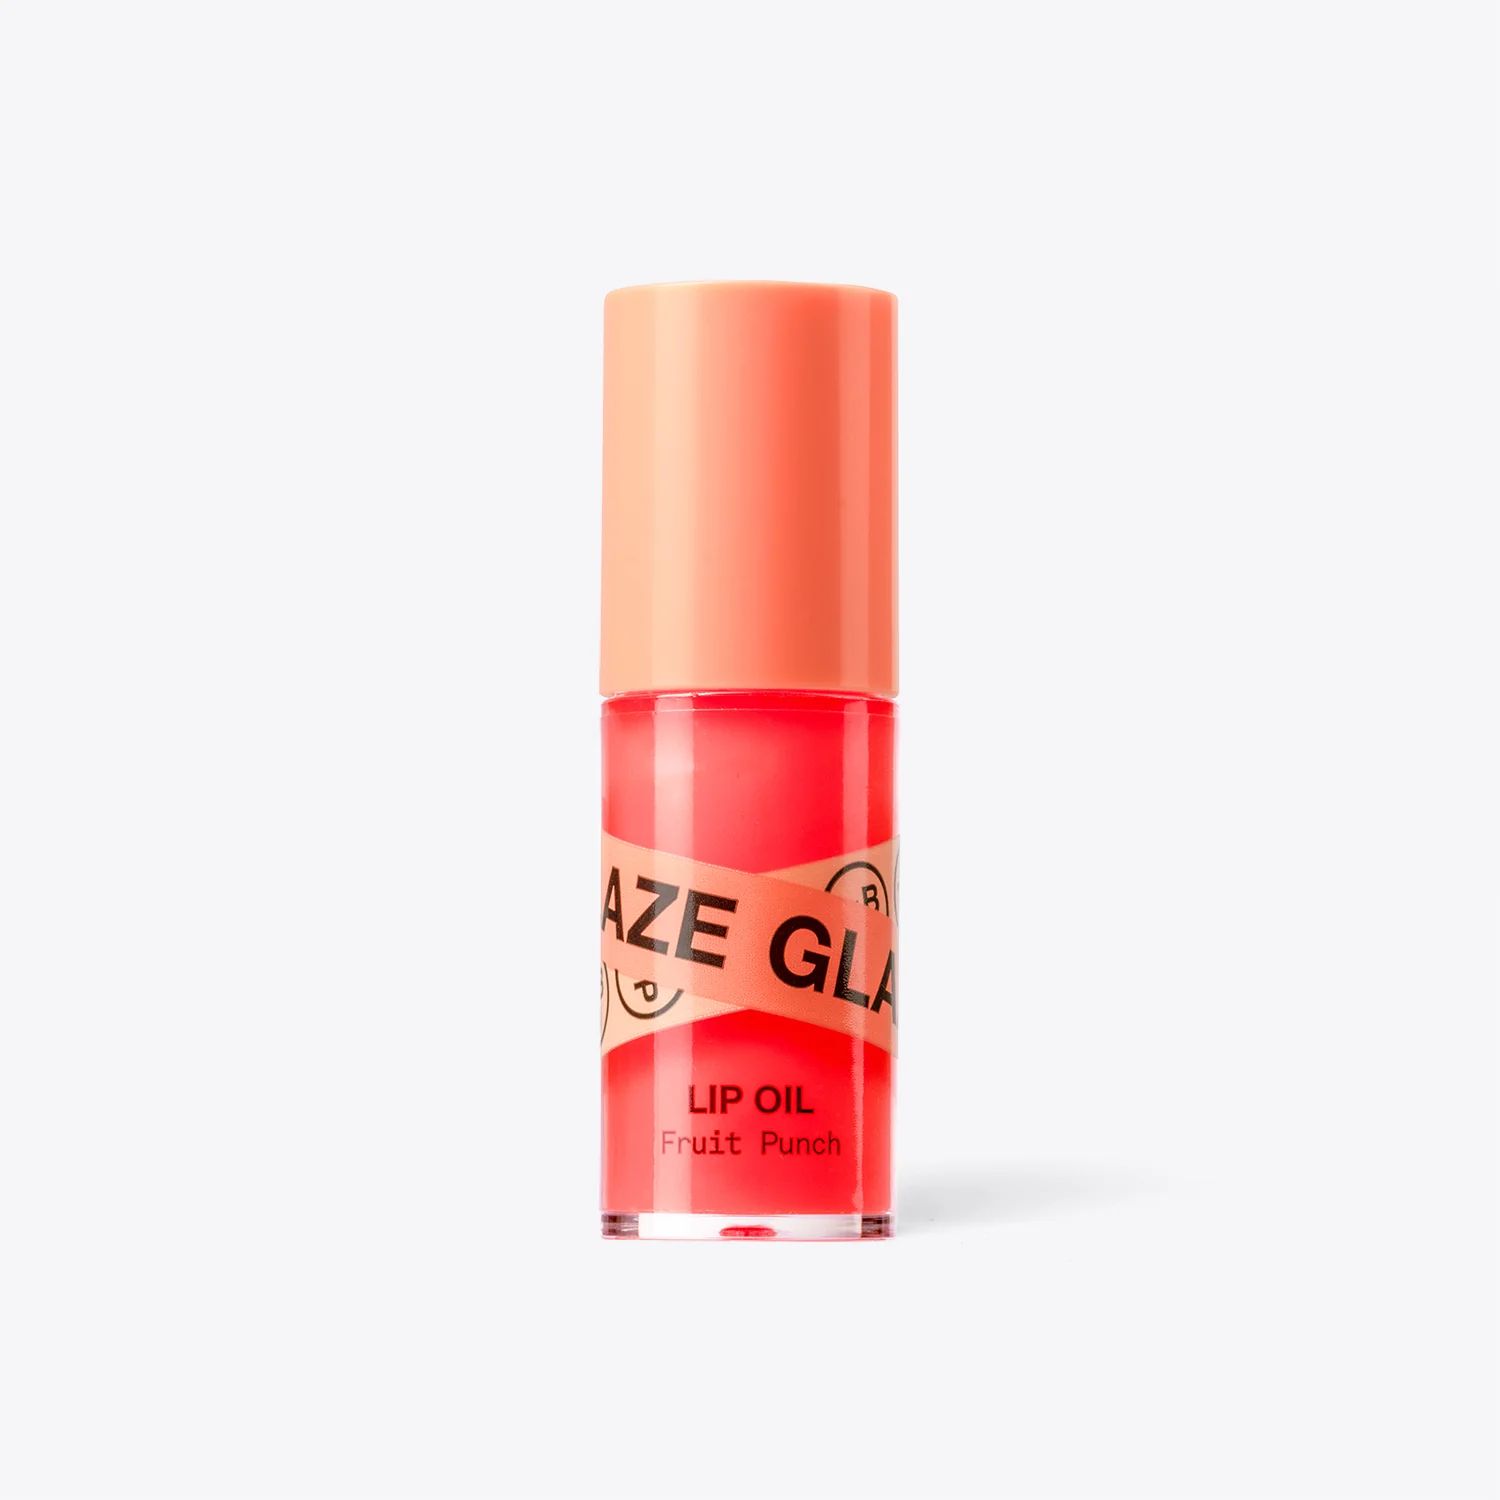 Glaze Lip Oil #10 | InnBeauty Project